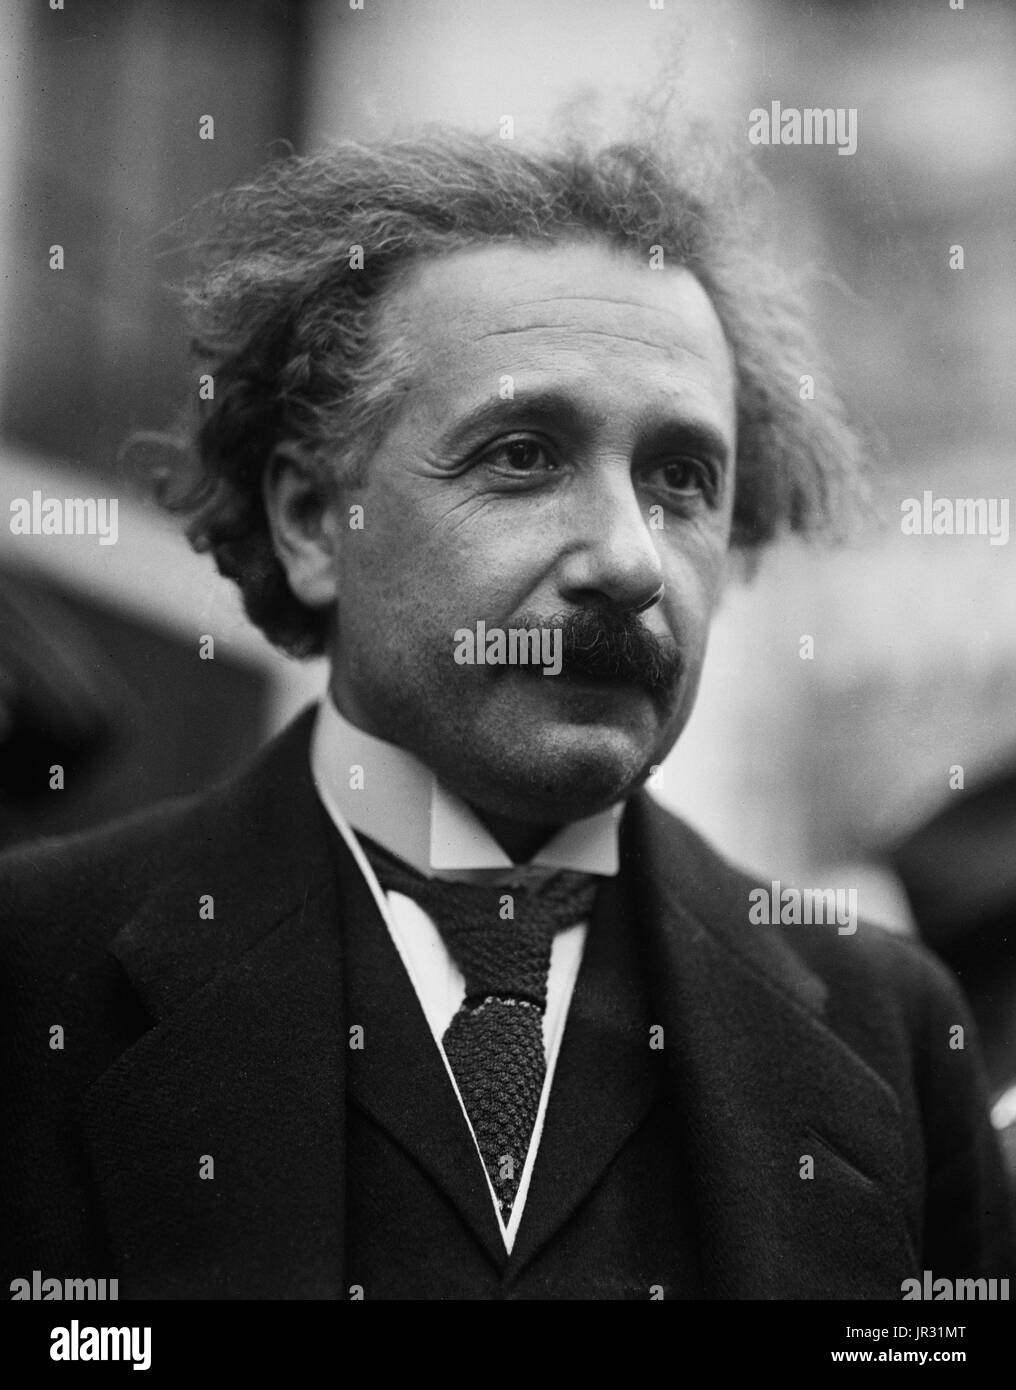 Albert Einstein (14. März 1879 - 18. April 1955) war ein deutschstämmiger theoretischer Physiker. Er entwickelte die allgemeine Relativitätstheorie, einer der beiden Säulen der modernen Physik. Er ist bekannt in der populären Kultur für seine Masse – Energie-Äquivalenz Formel E = mc2. Er erhielt 1921 den Nobelpreis für Physik "für seine Verdienste um die theoretische Physik und besonders für seine Entdeckung des Gesetzes des photoelektrischen Effekts". Er besuchte die USA, als Hitler 1933 an die Macht kam, und nicht zurück nach Deutschland mehr konnten. Er ließ sich in Amerika ein Staatsbürger im Jahr 1940. Er half alert Präsident Roosevelt Stockfoto